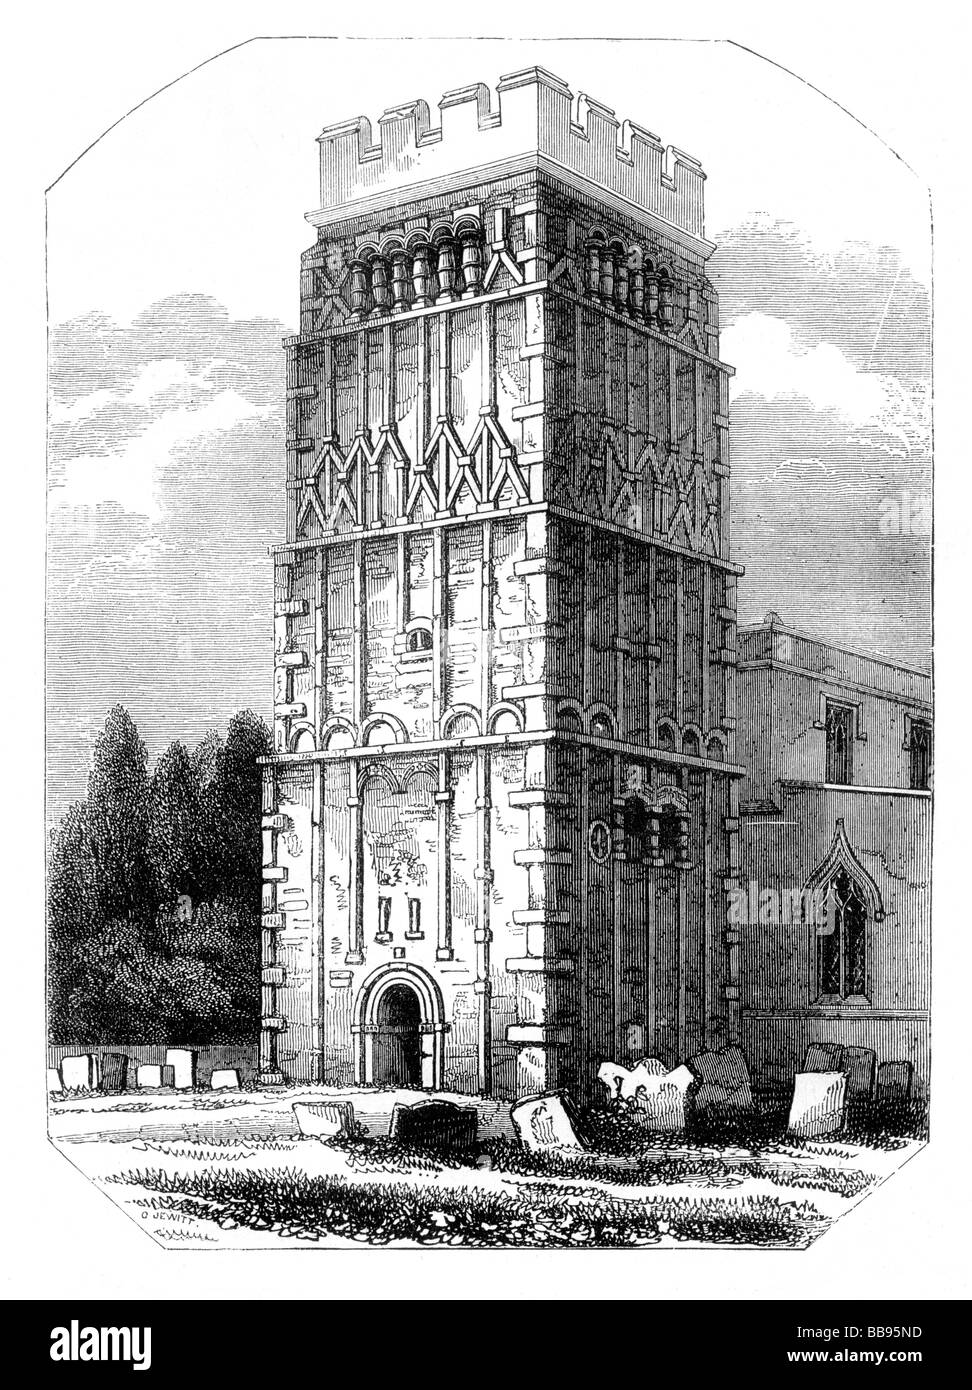 Der Saxon Tower of Earls Barton Church aus dem 10. Jahrhundert, Northamptonshire England; Zeichnung von Orlando Jewitt 1799 bis 1869 Stockfoto